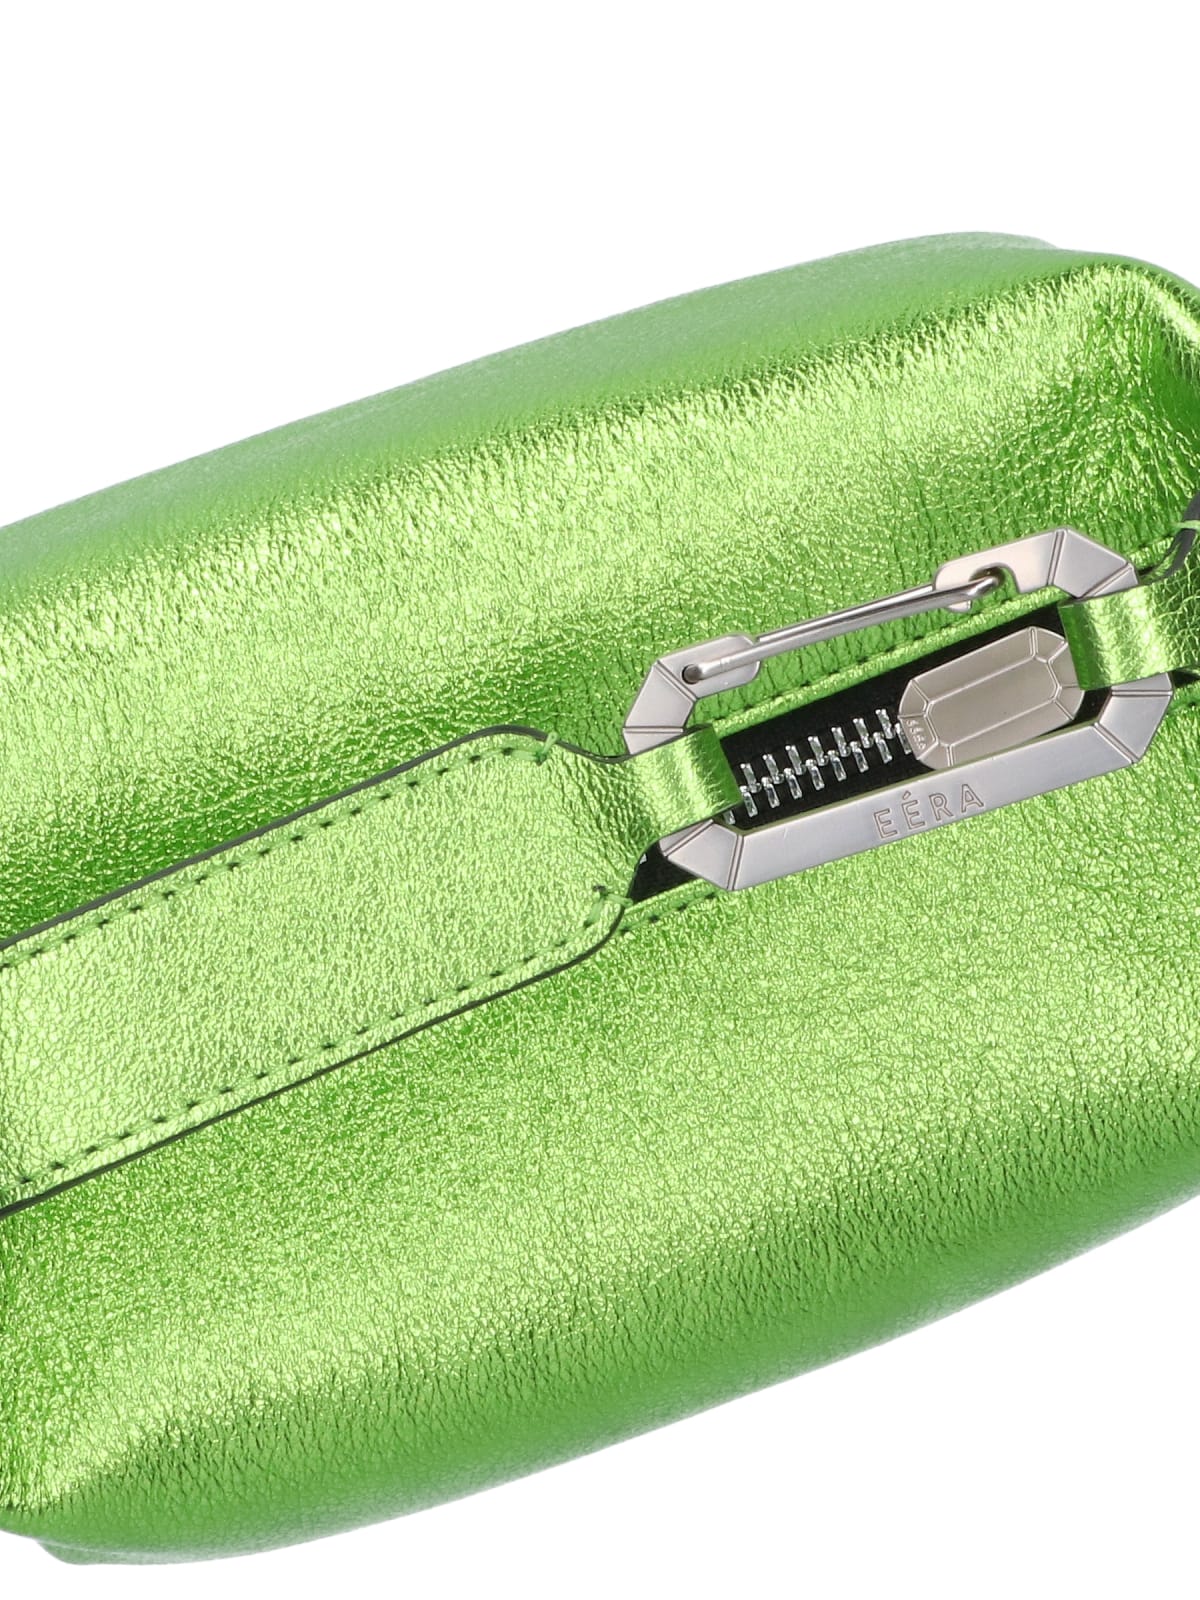 Shop Eéra Moon Handbag In Green